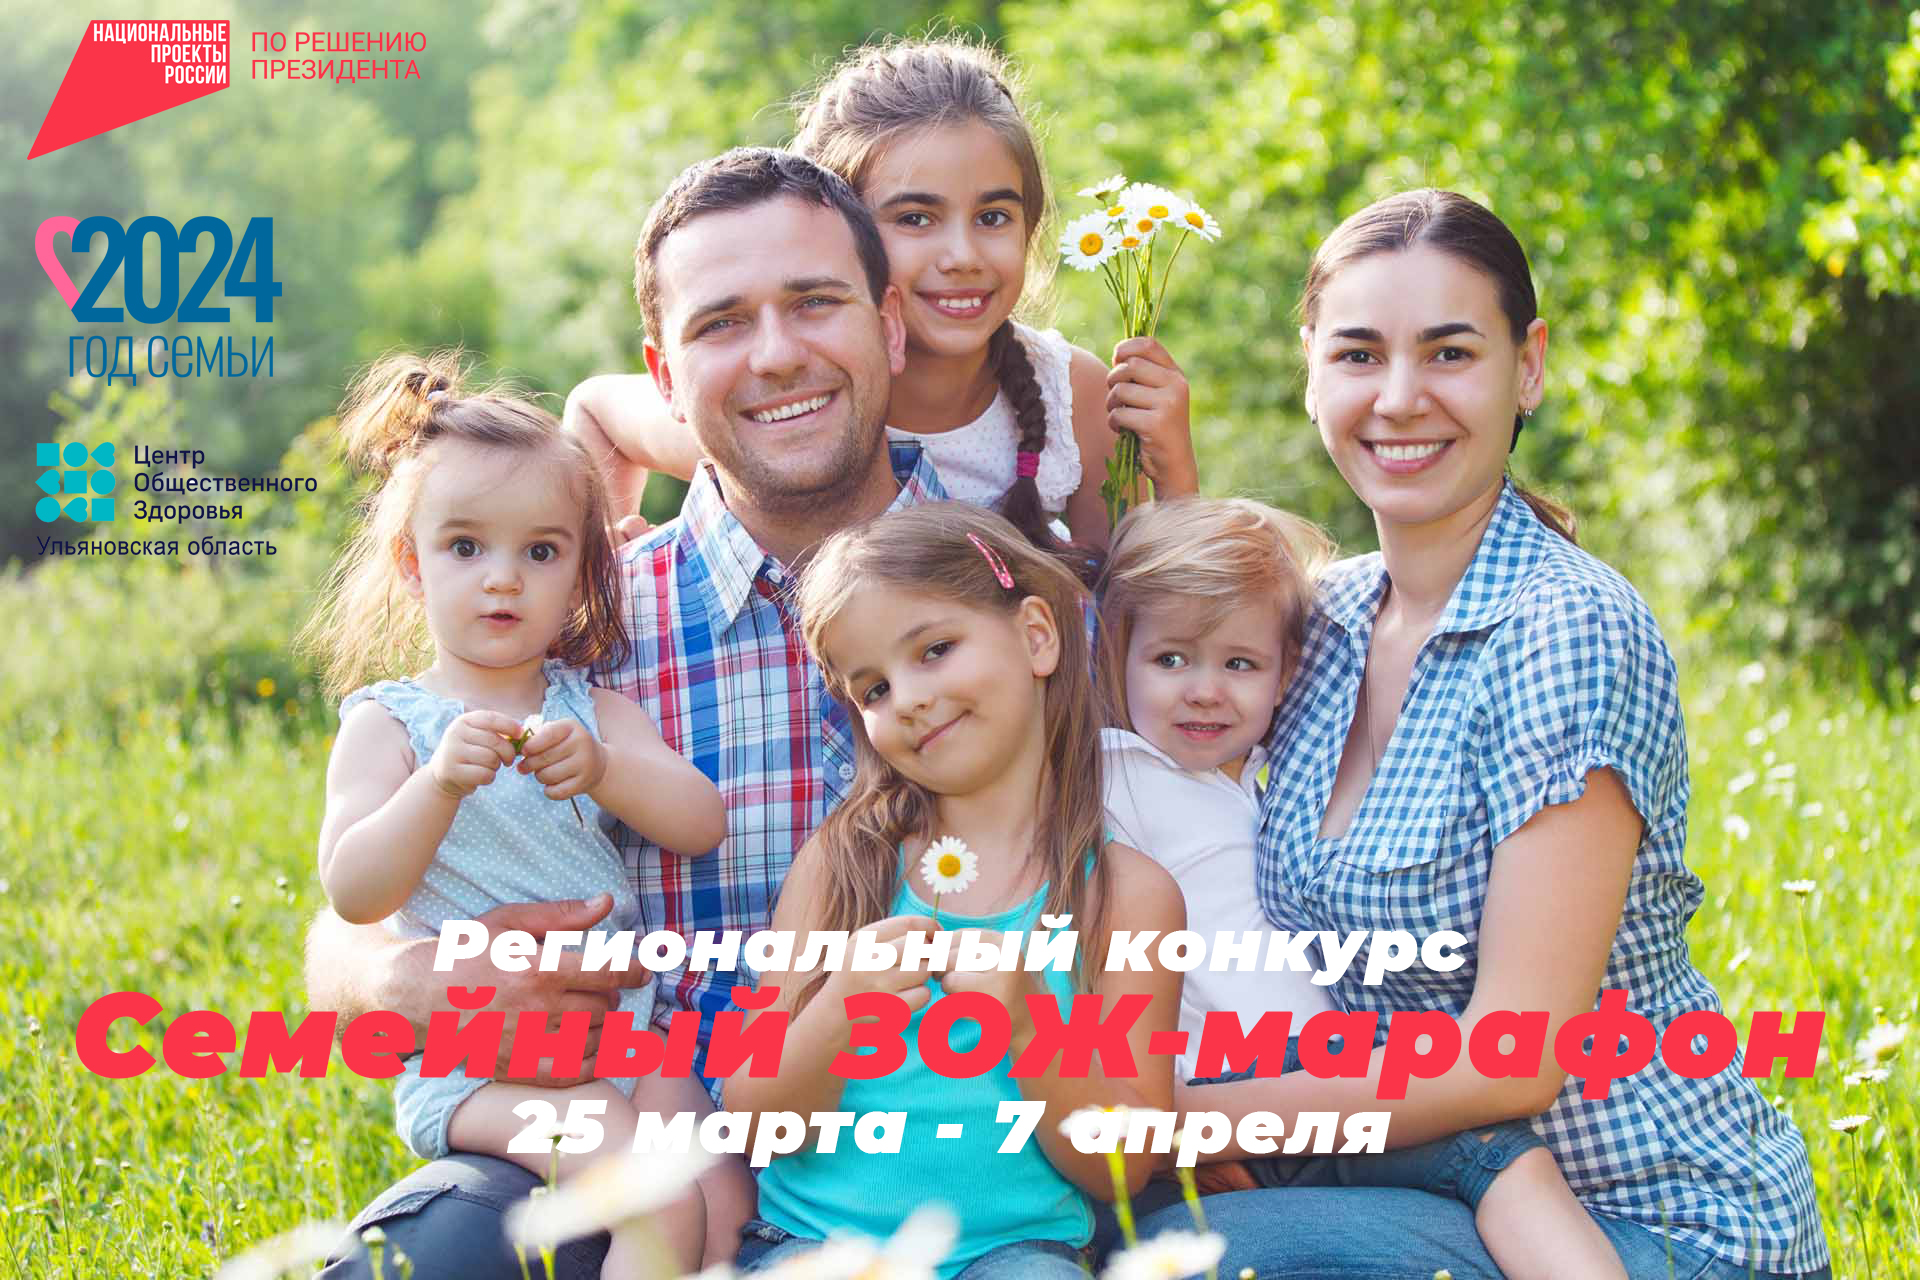 Ульяновцев приглашают к участию в семейном ЗОЖ-марафоне.